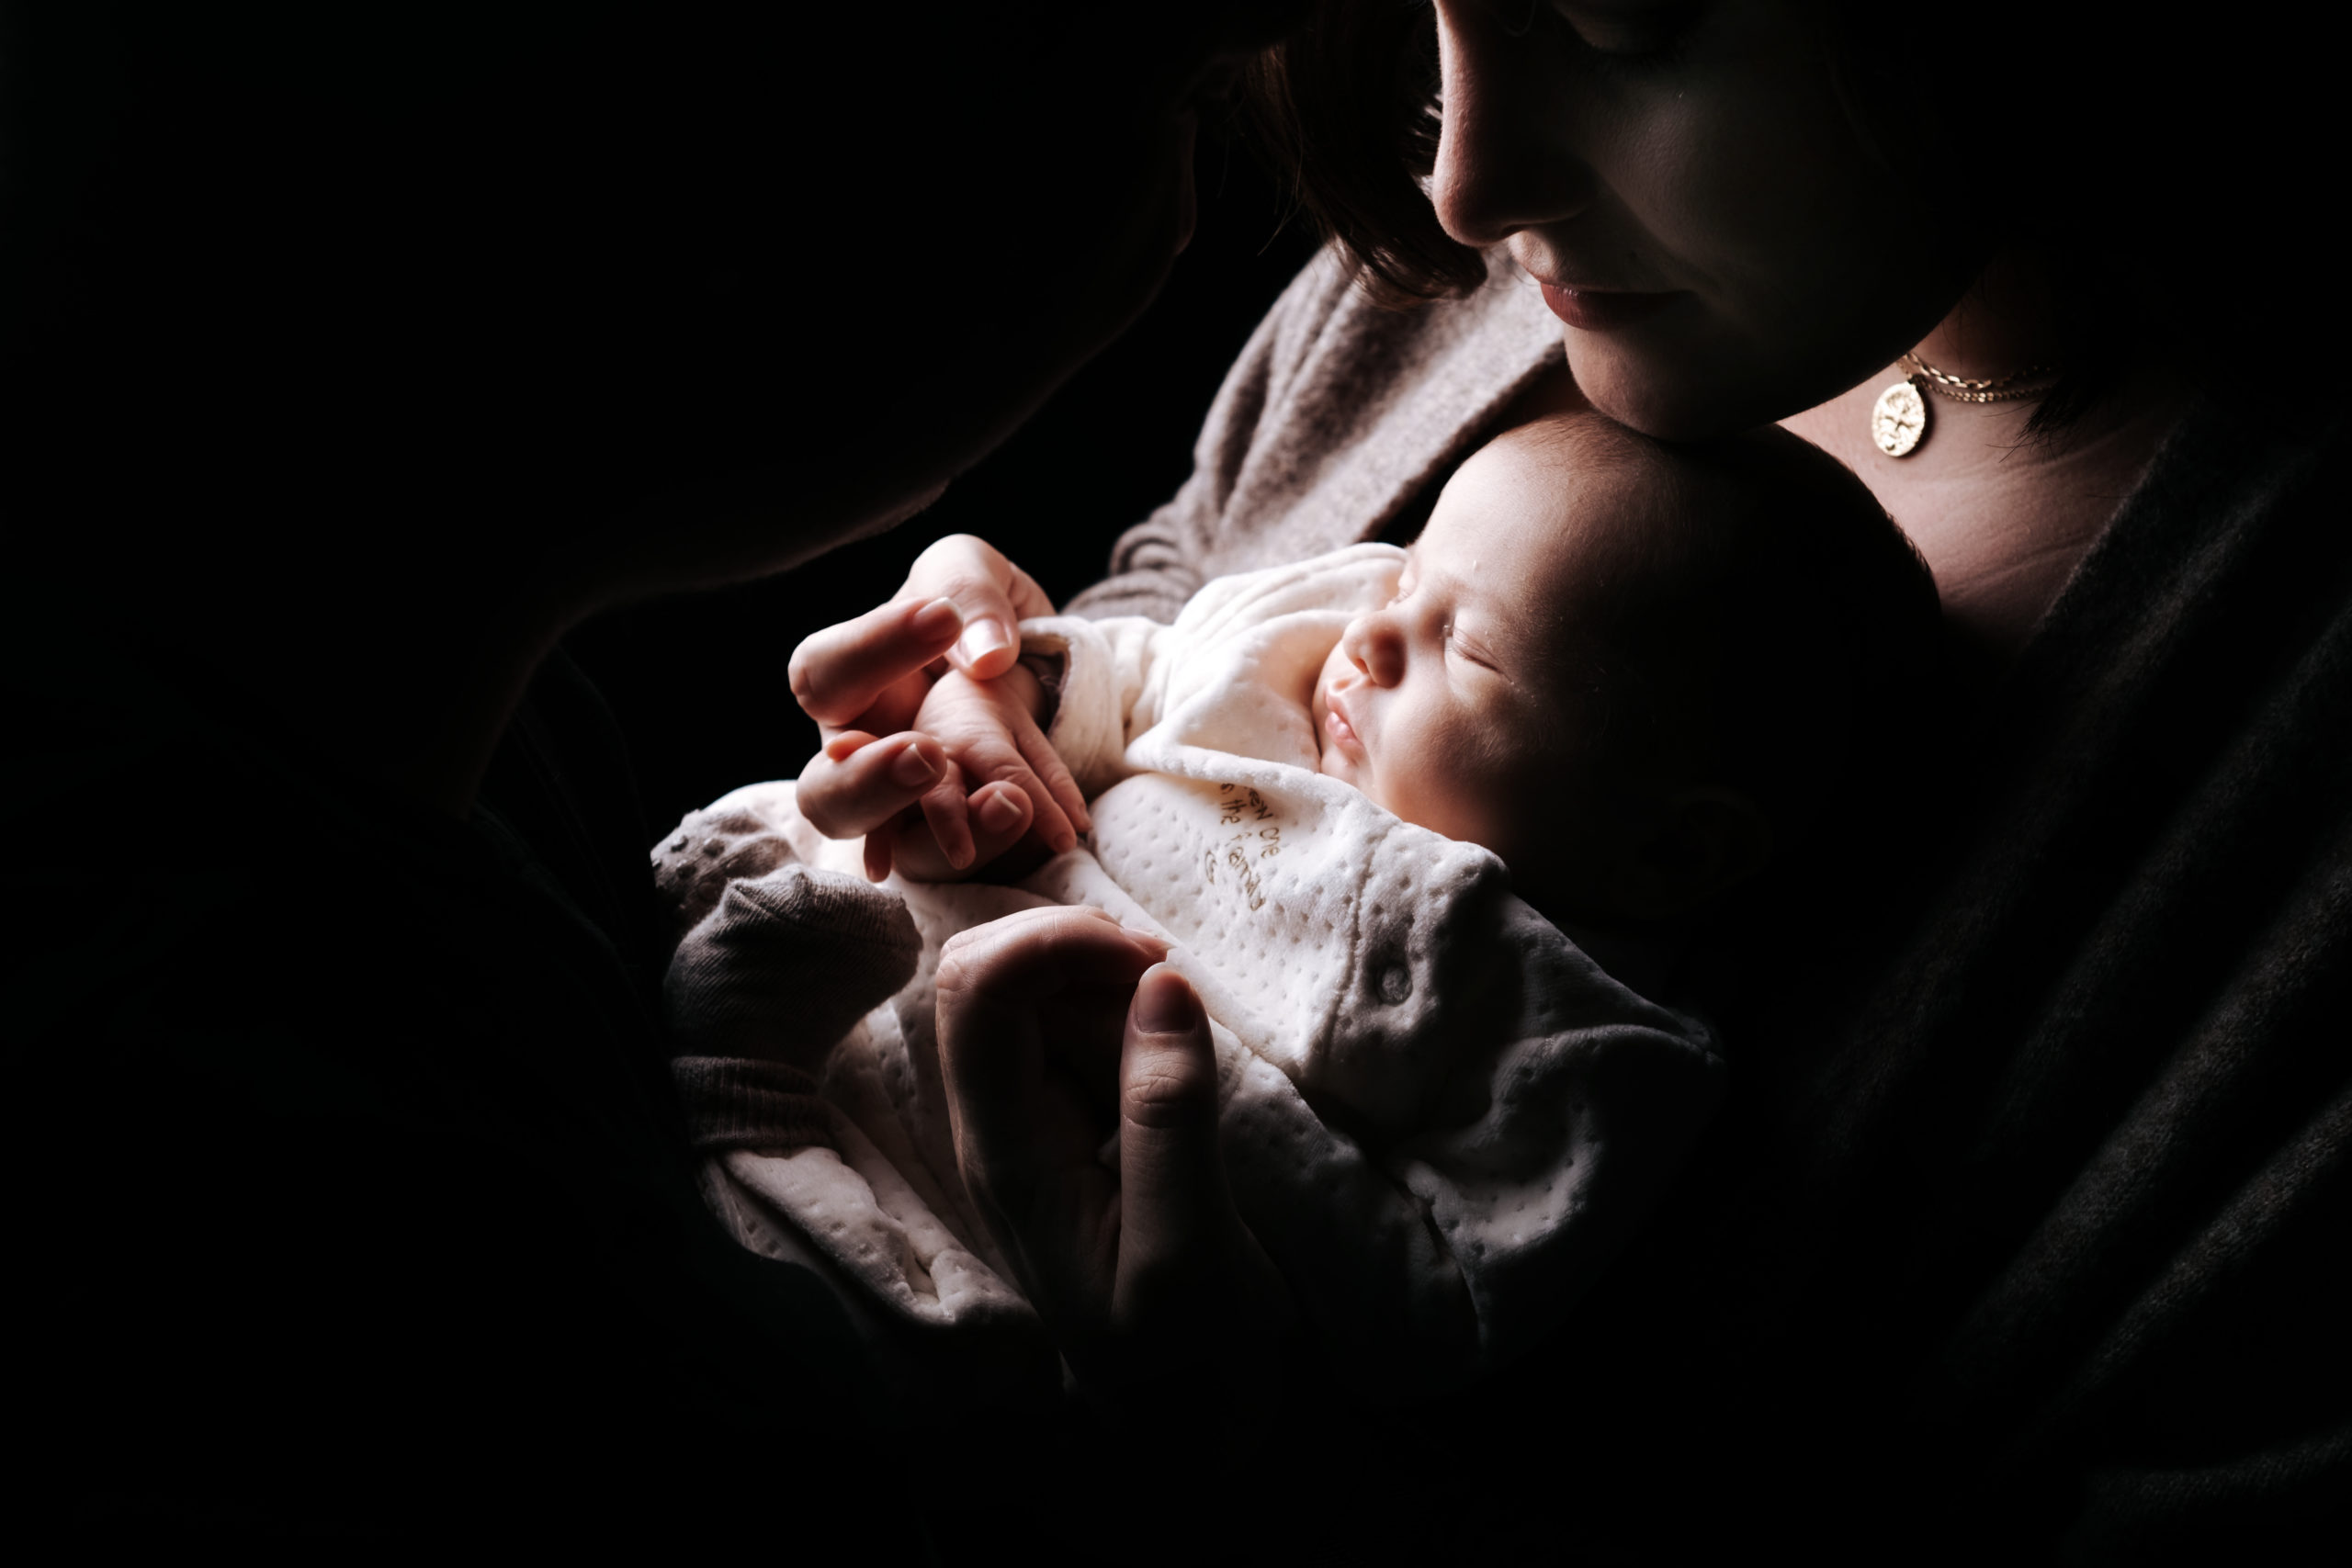 Photographe famille grossesse nouveau-né Landes Dax- Bourdenet Le Van J PEDEBERNADE 013 scaled